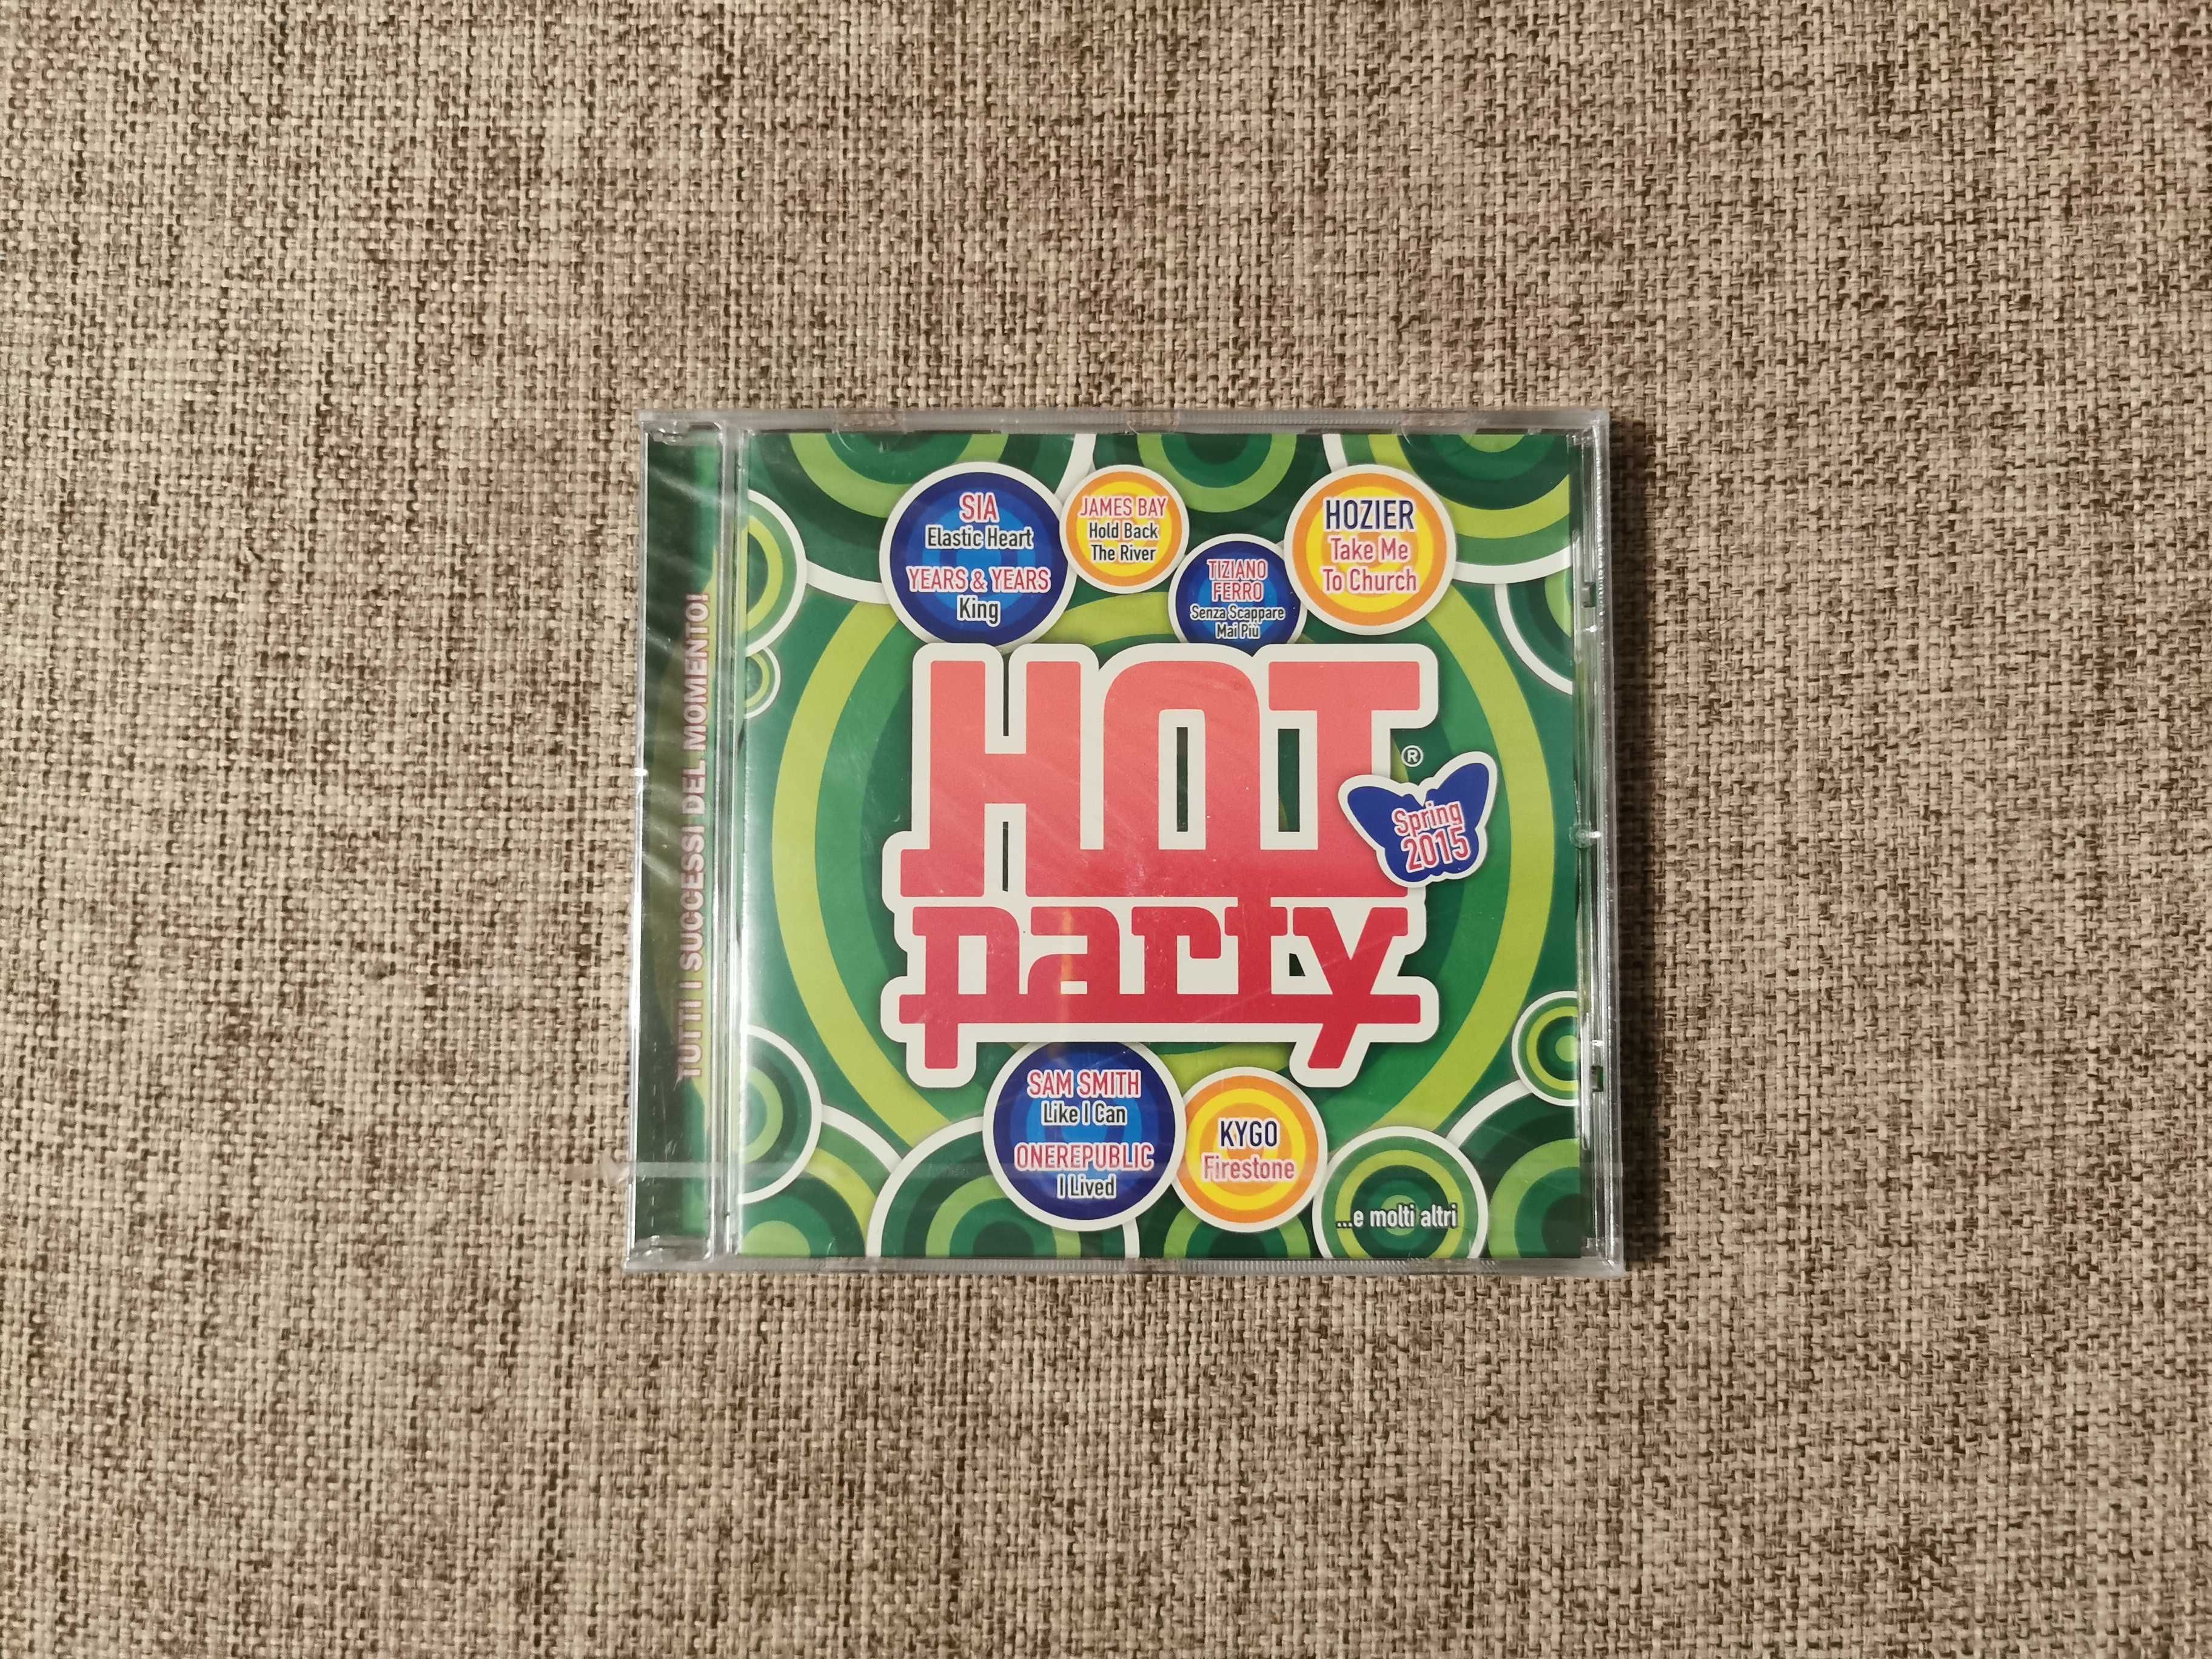 Muzyka CD - Hot Party Spring 2015 - Sia James Bay Hozier Kygo